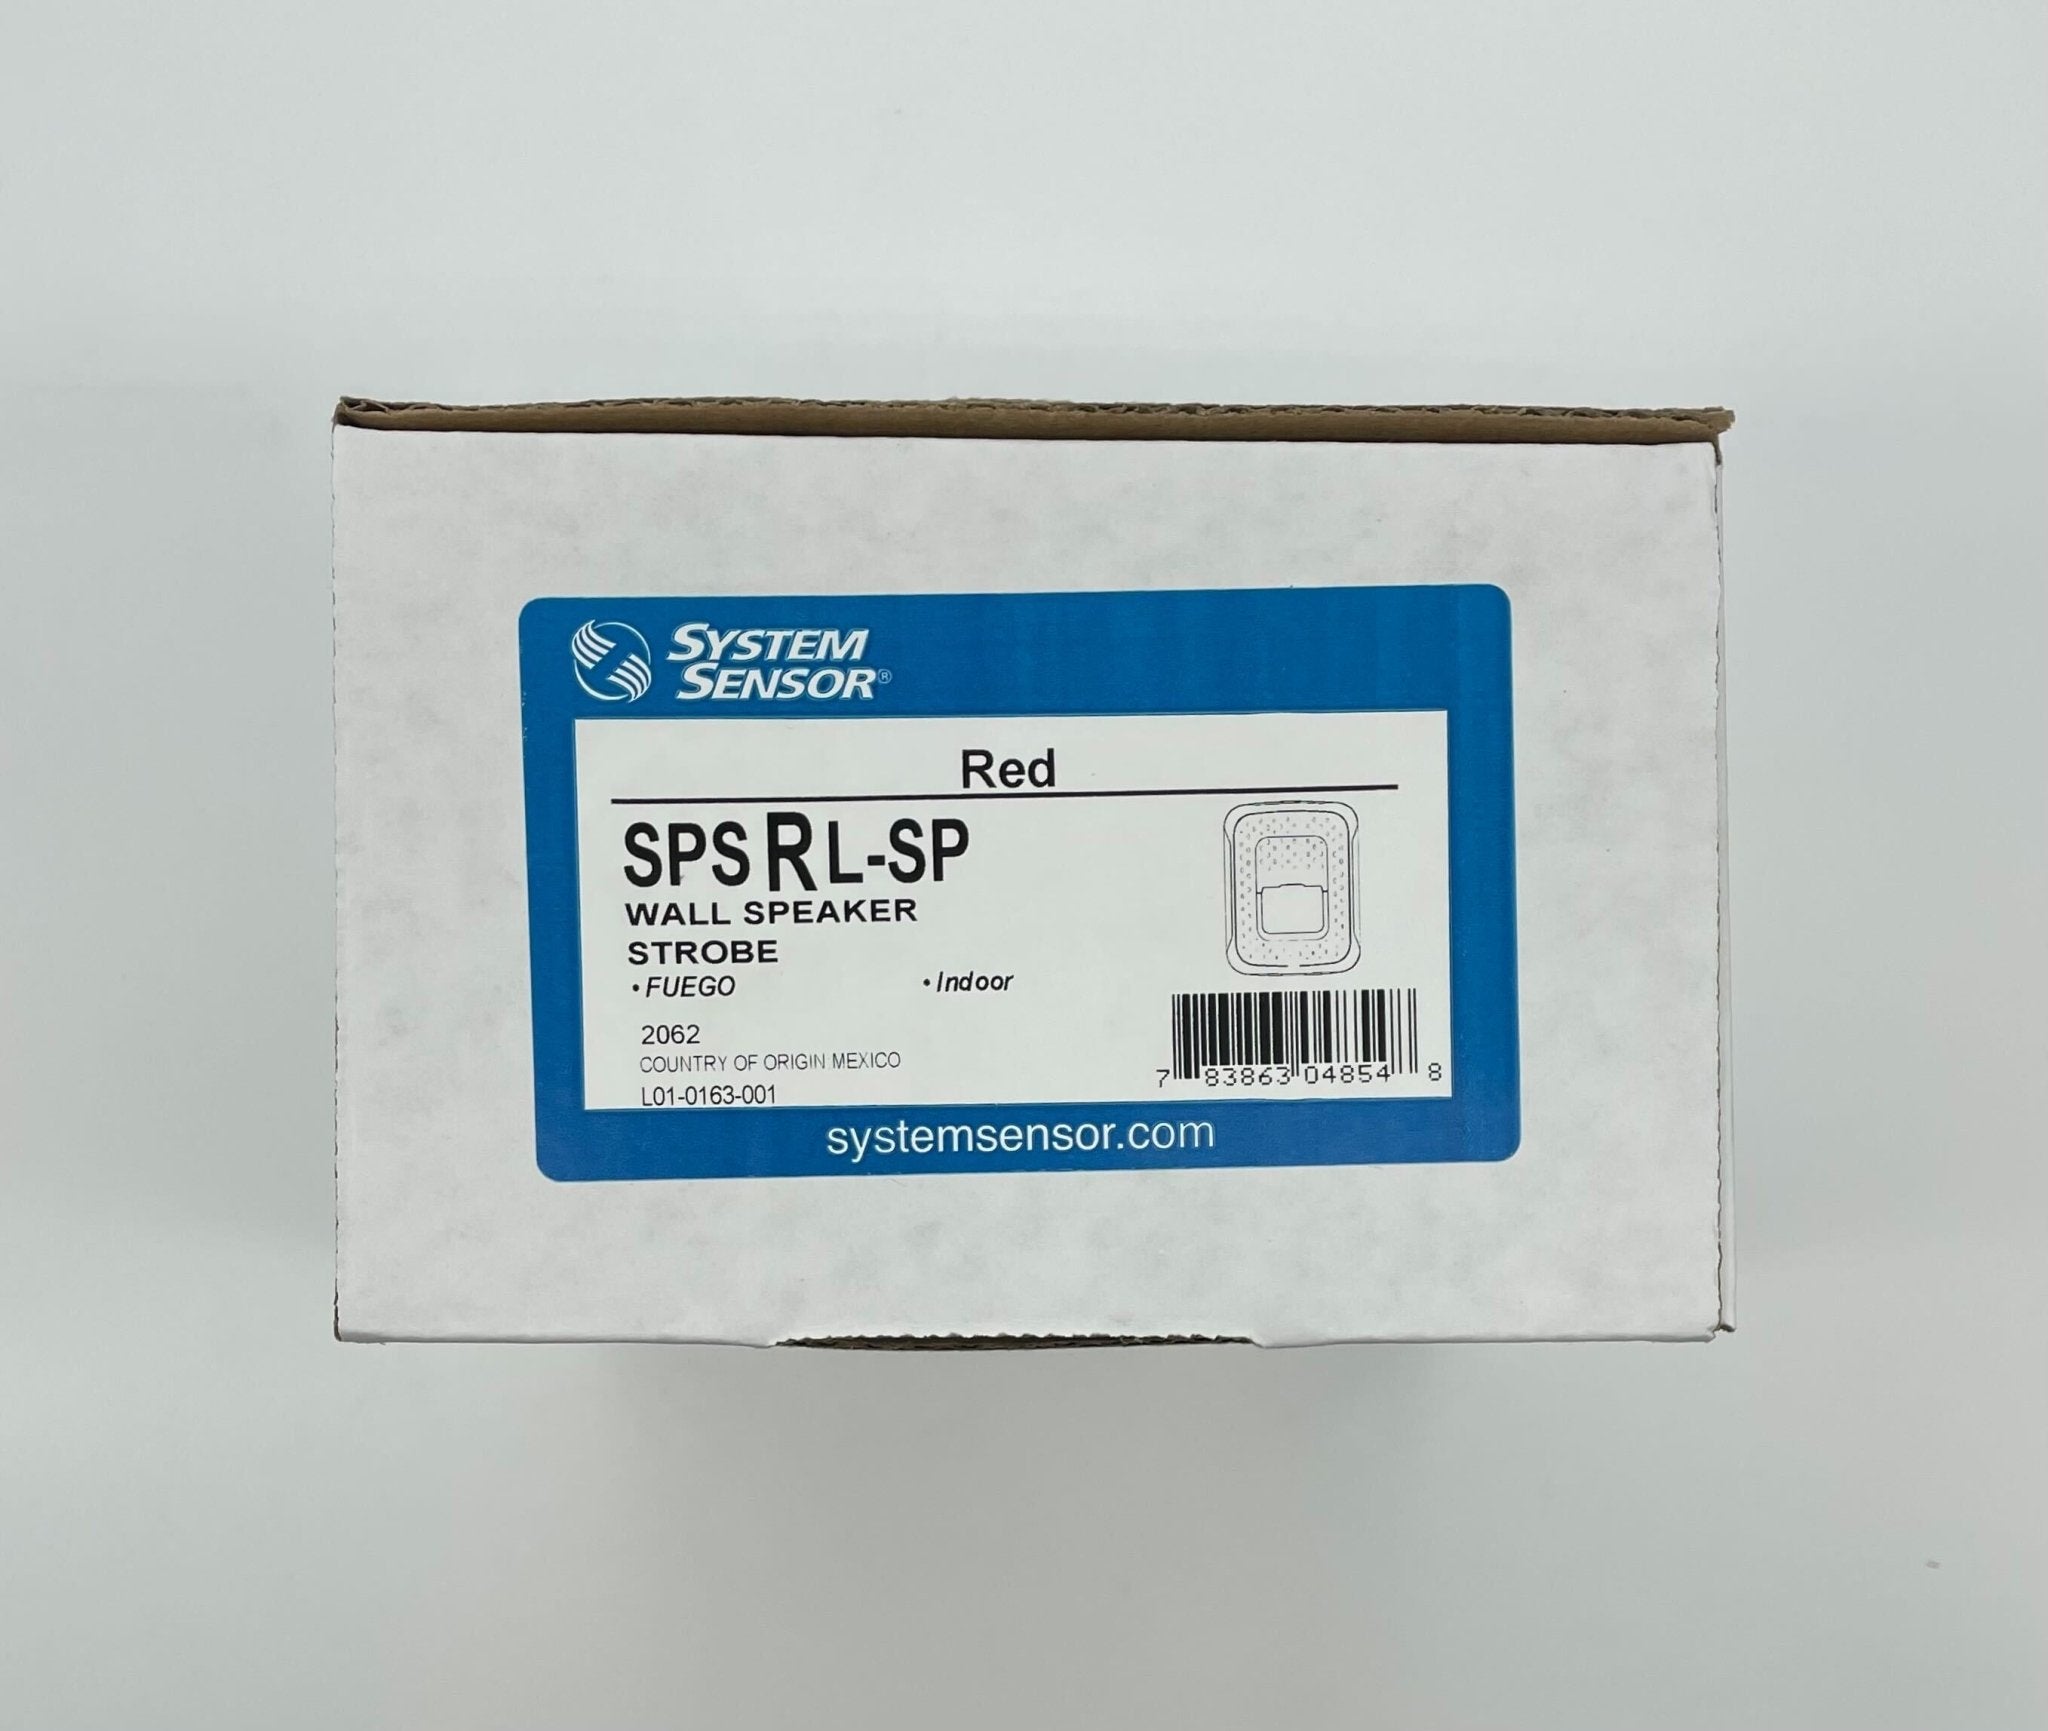 System Sensor SPSRL-SP - The Fire Alarm Supplier